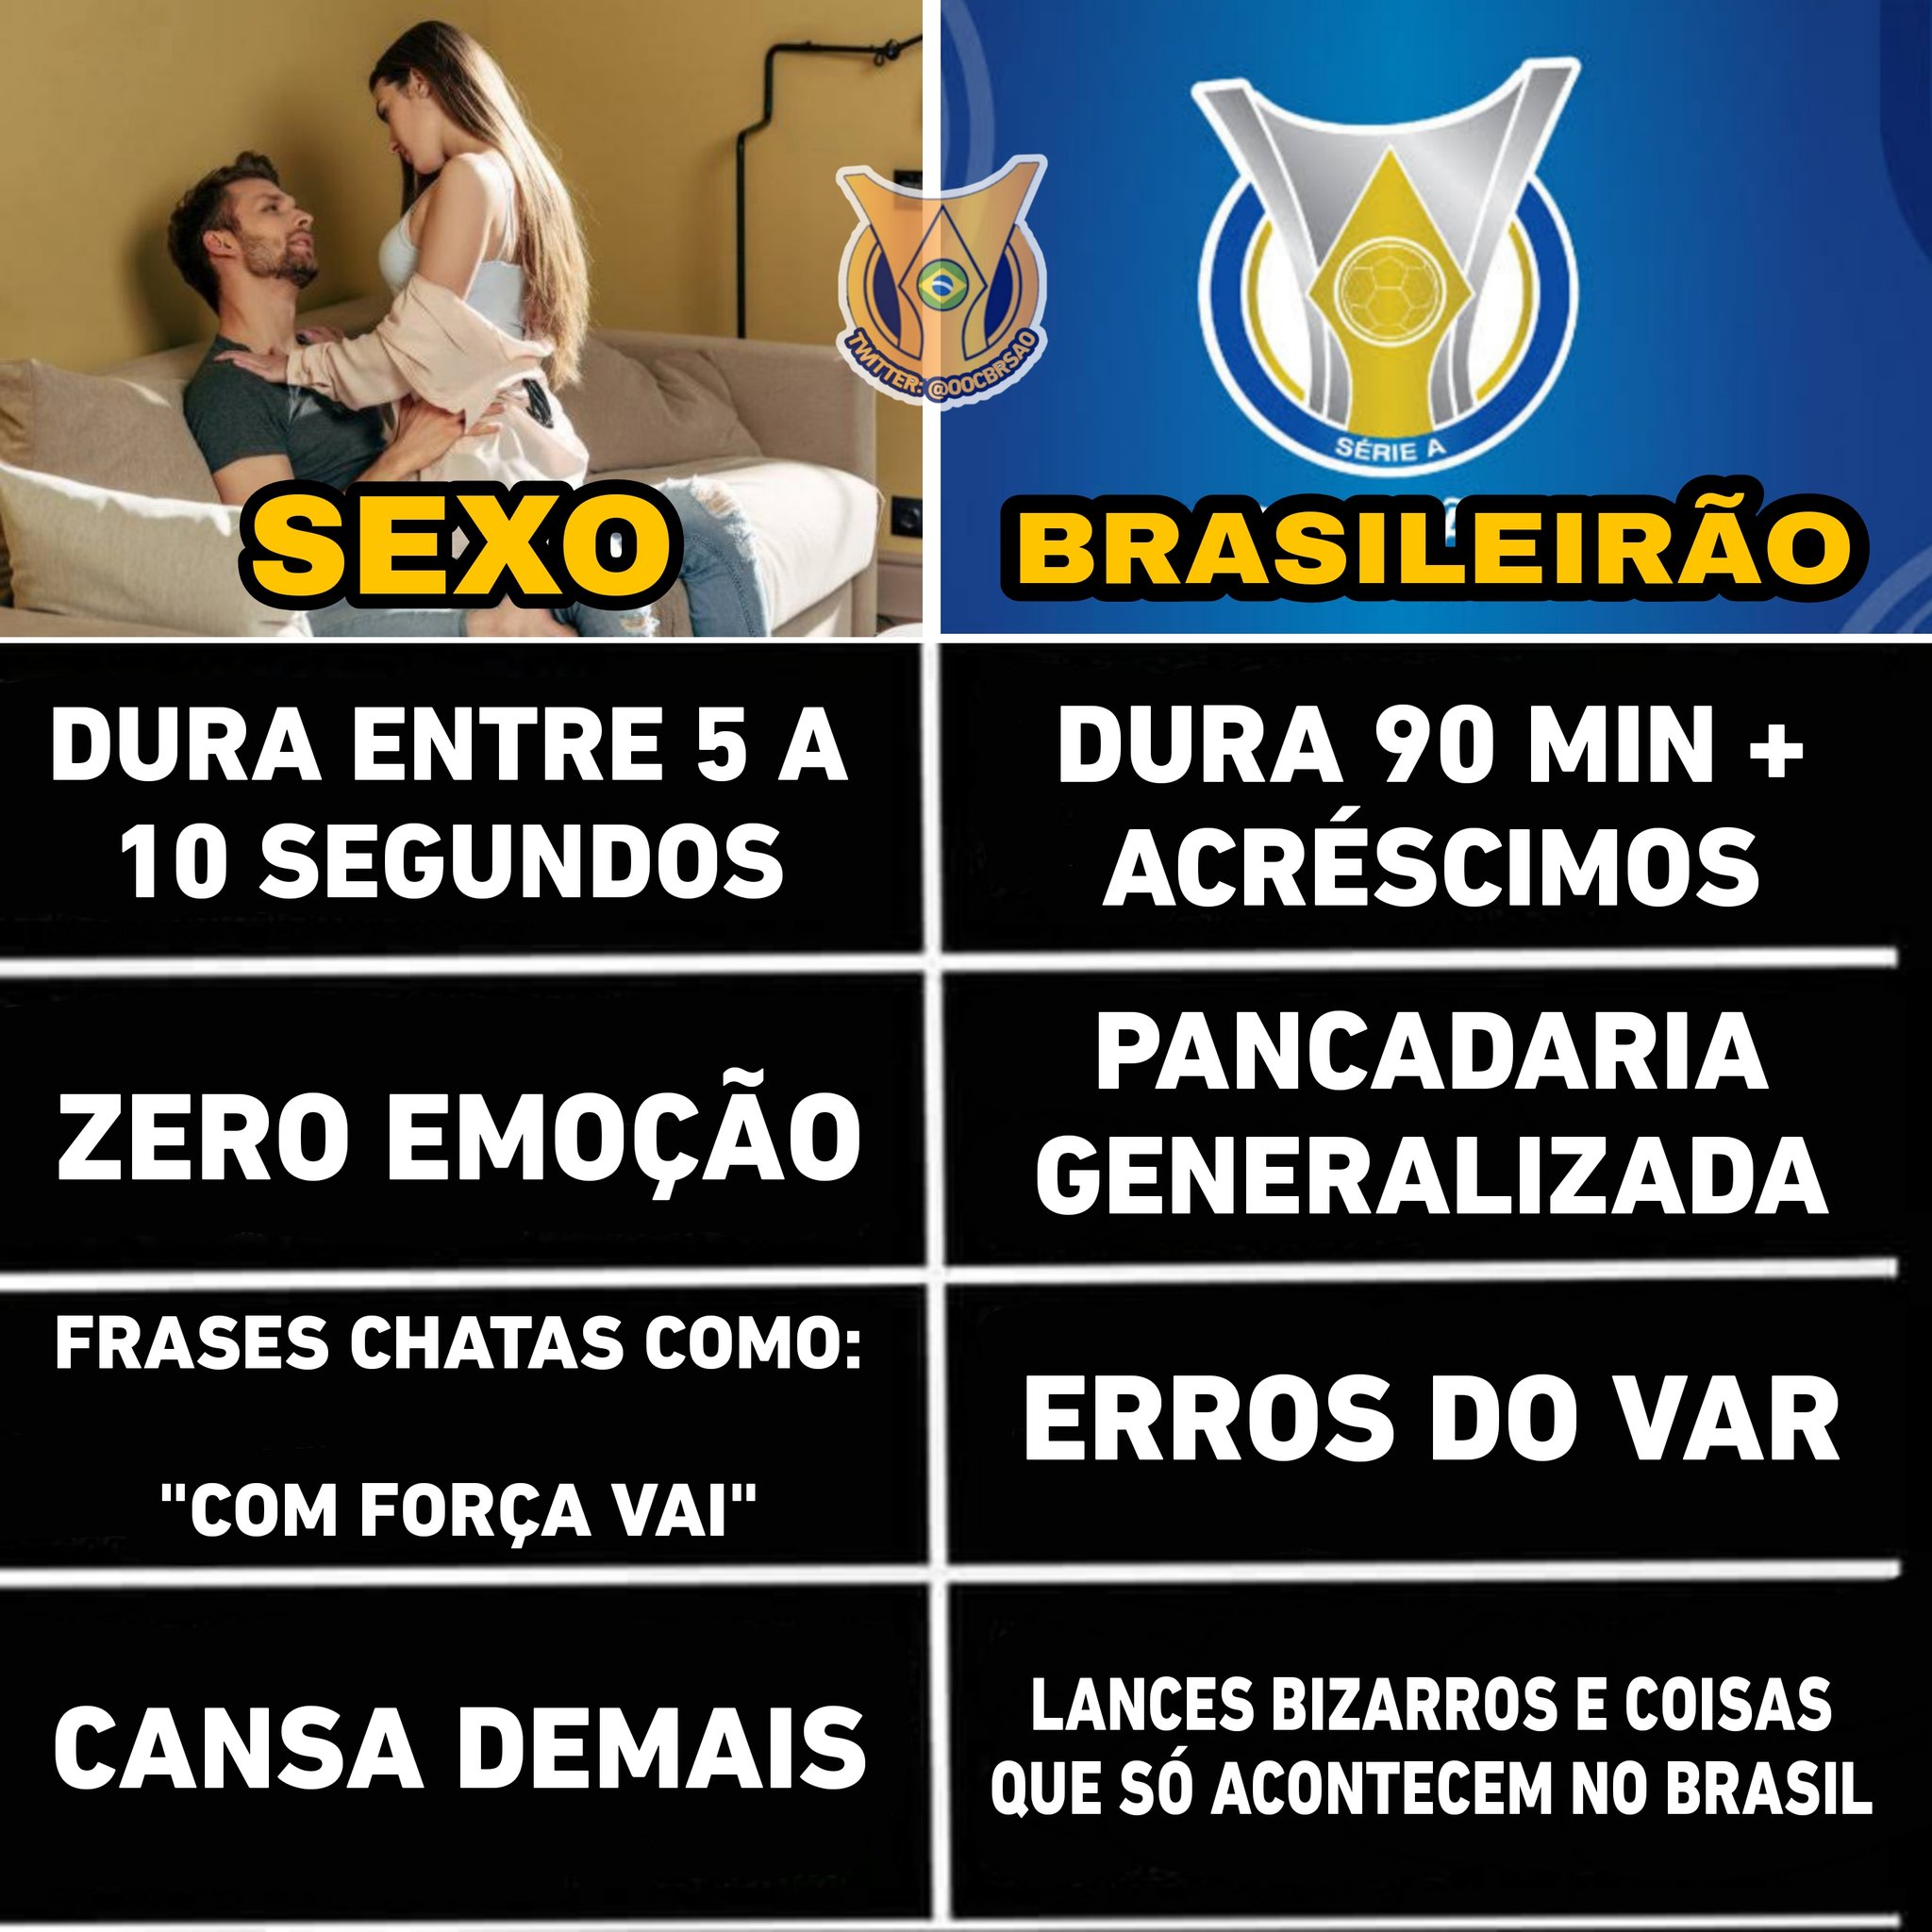 out of context brasileirão on X: A tropa do calvo   / X